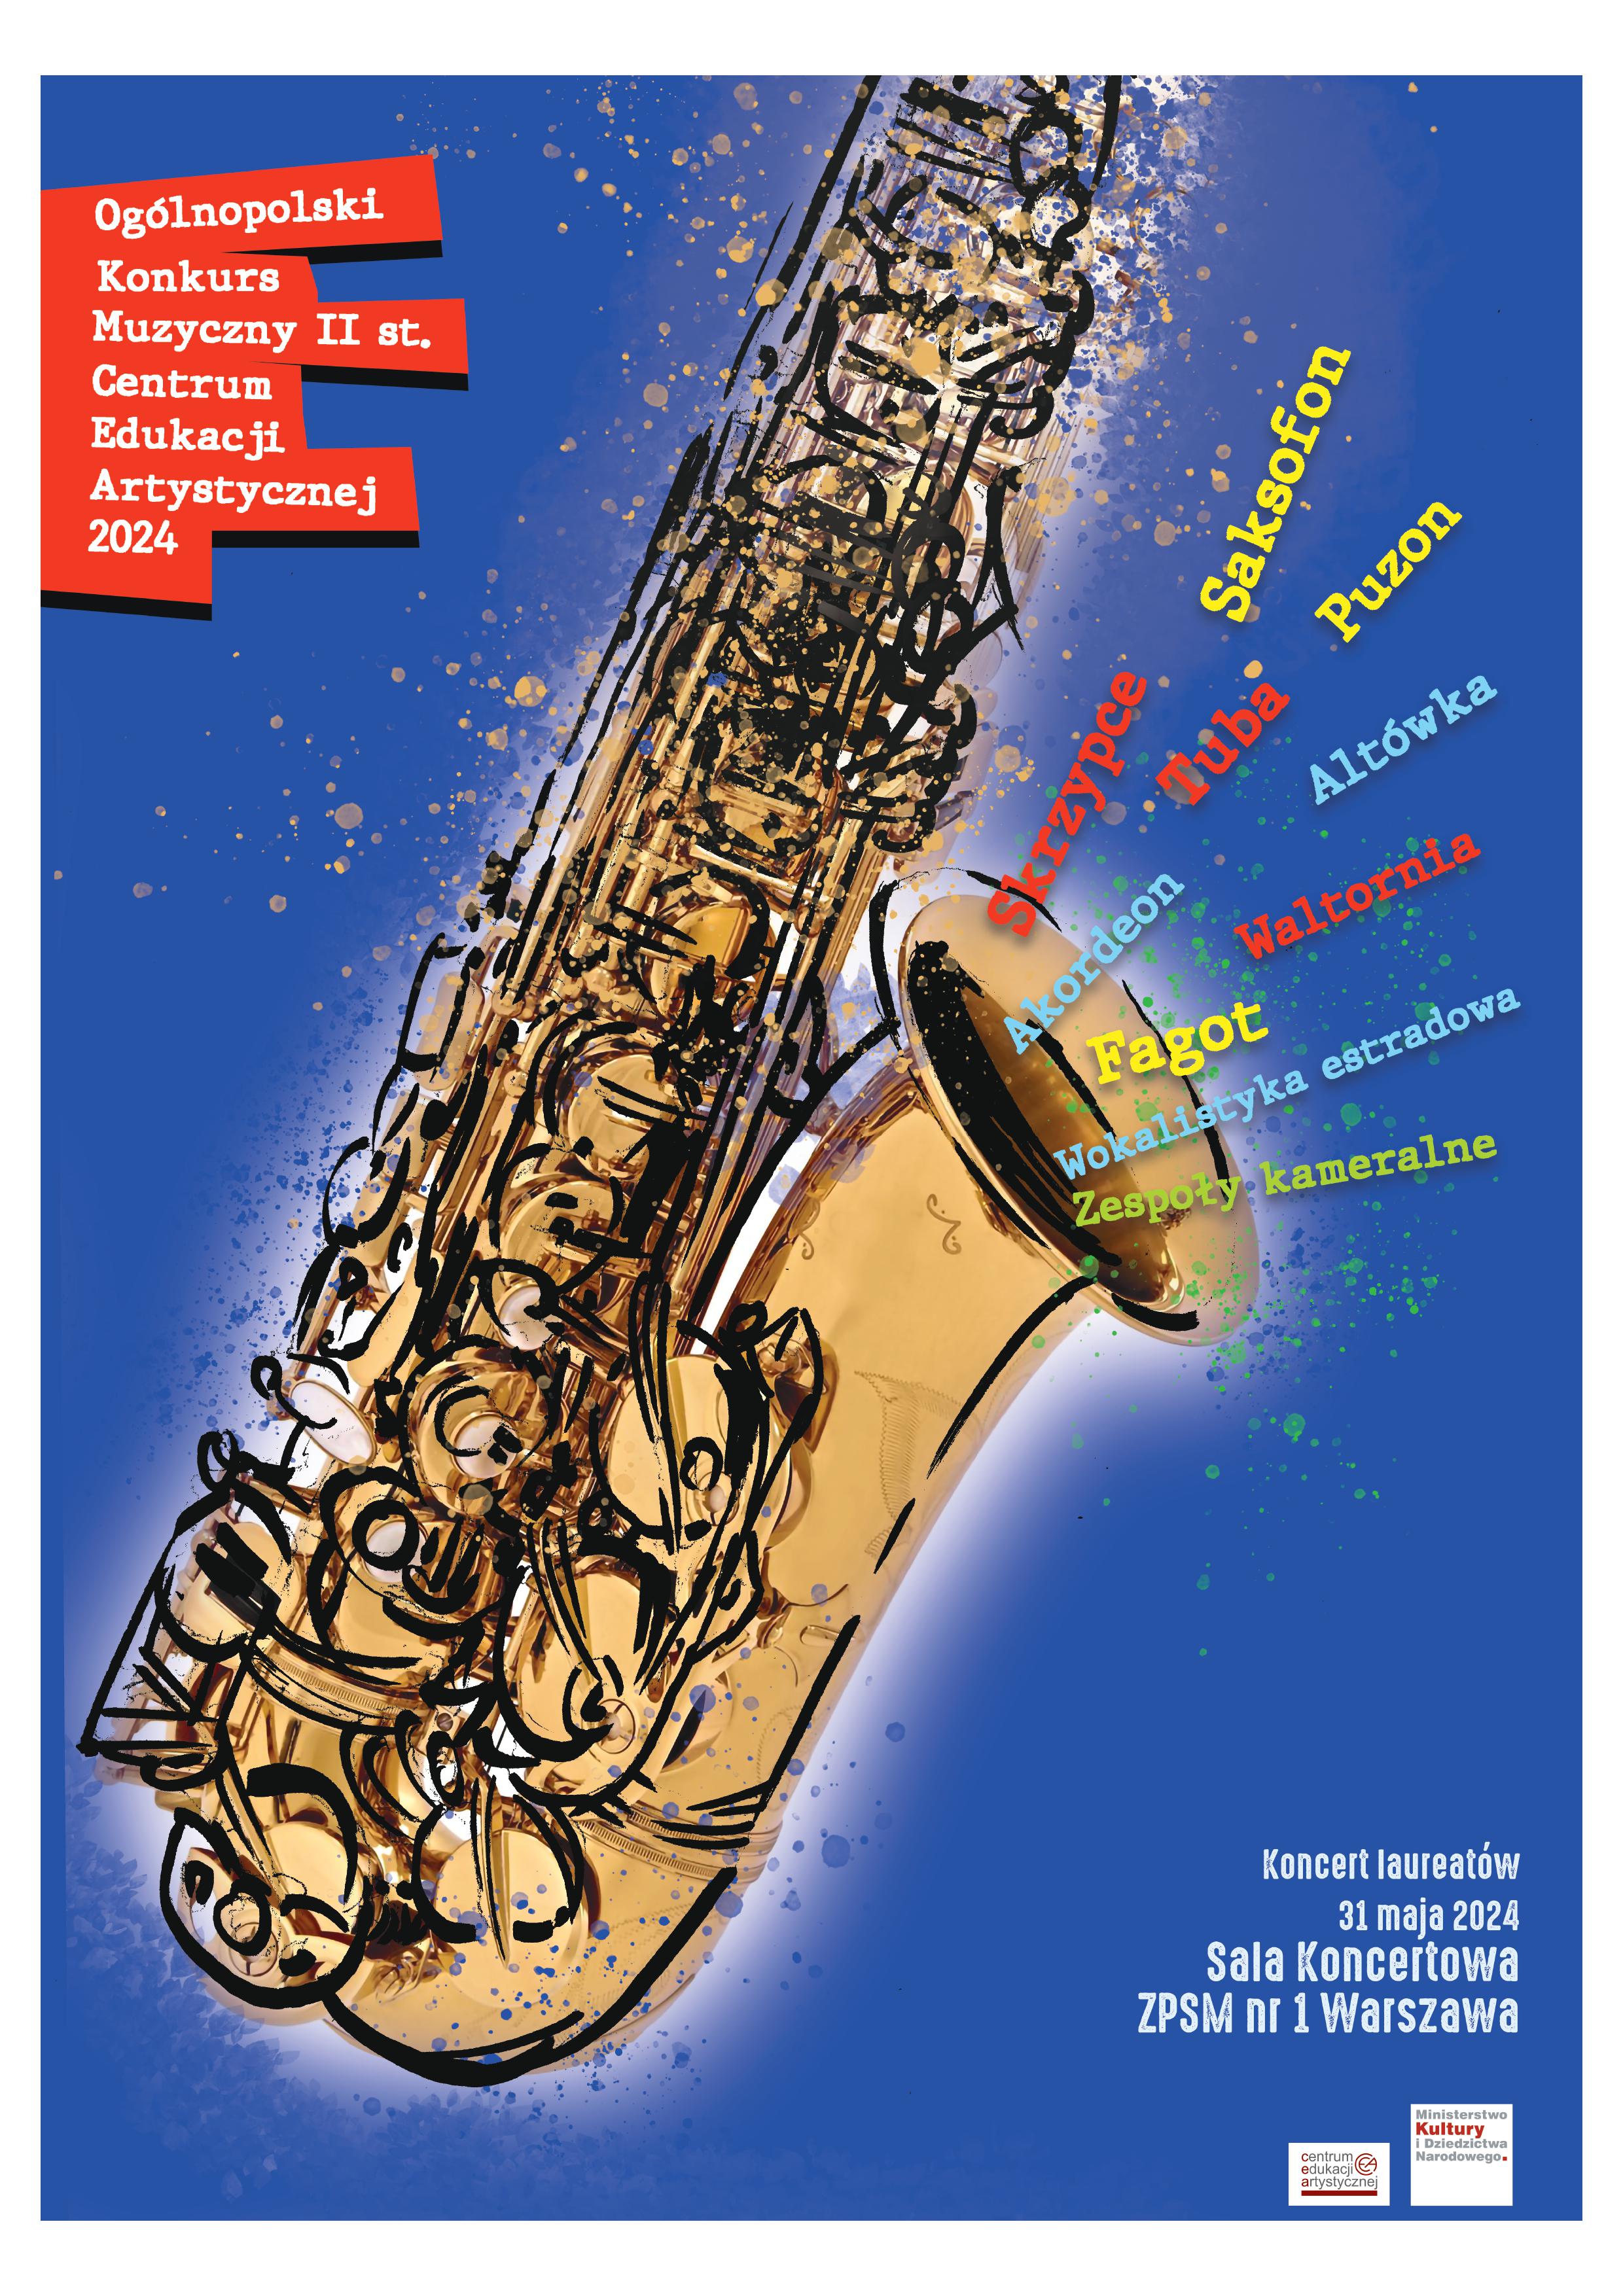 kolorowy plakat zawierający grafikę saksofonu z napisami instrumentów oraz logo Centrum Edukacji Artystycznej i MKiDN